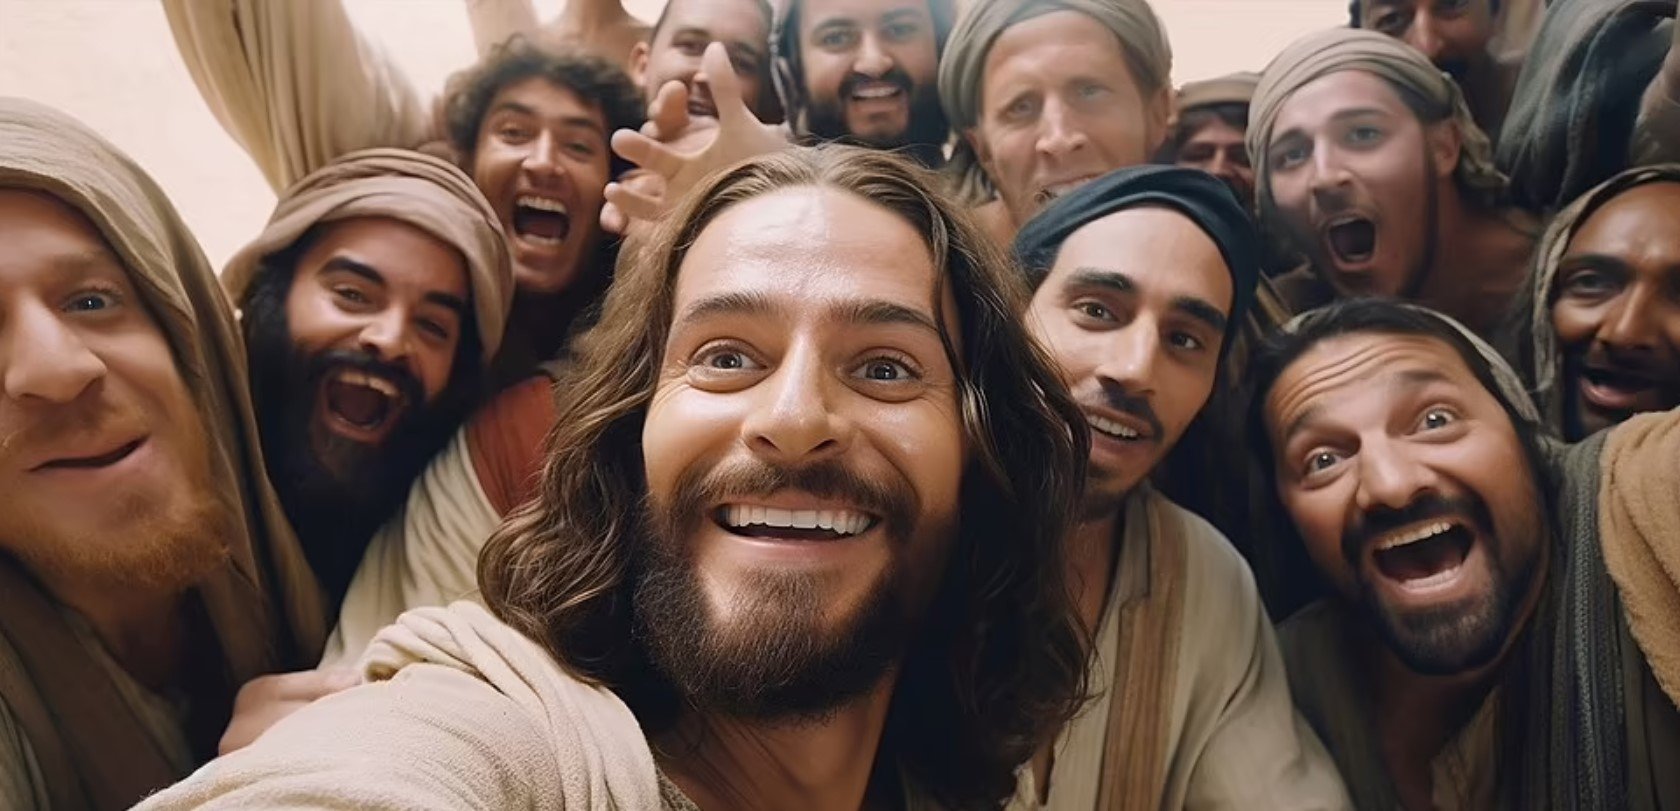 Selfie de A Última Ceia com Jesus tirando foto e alguns dos apóstolos sorrindo. Foto: Duncan Thomsen / SWNS